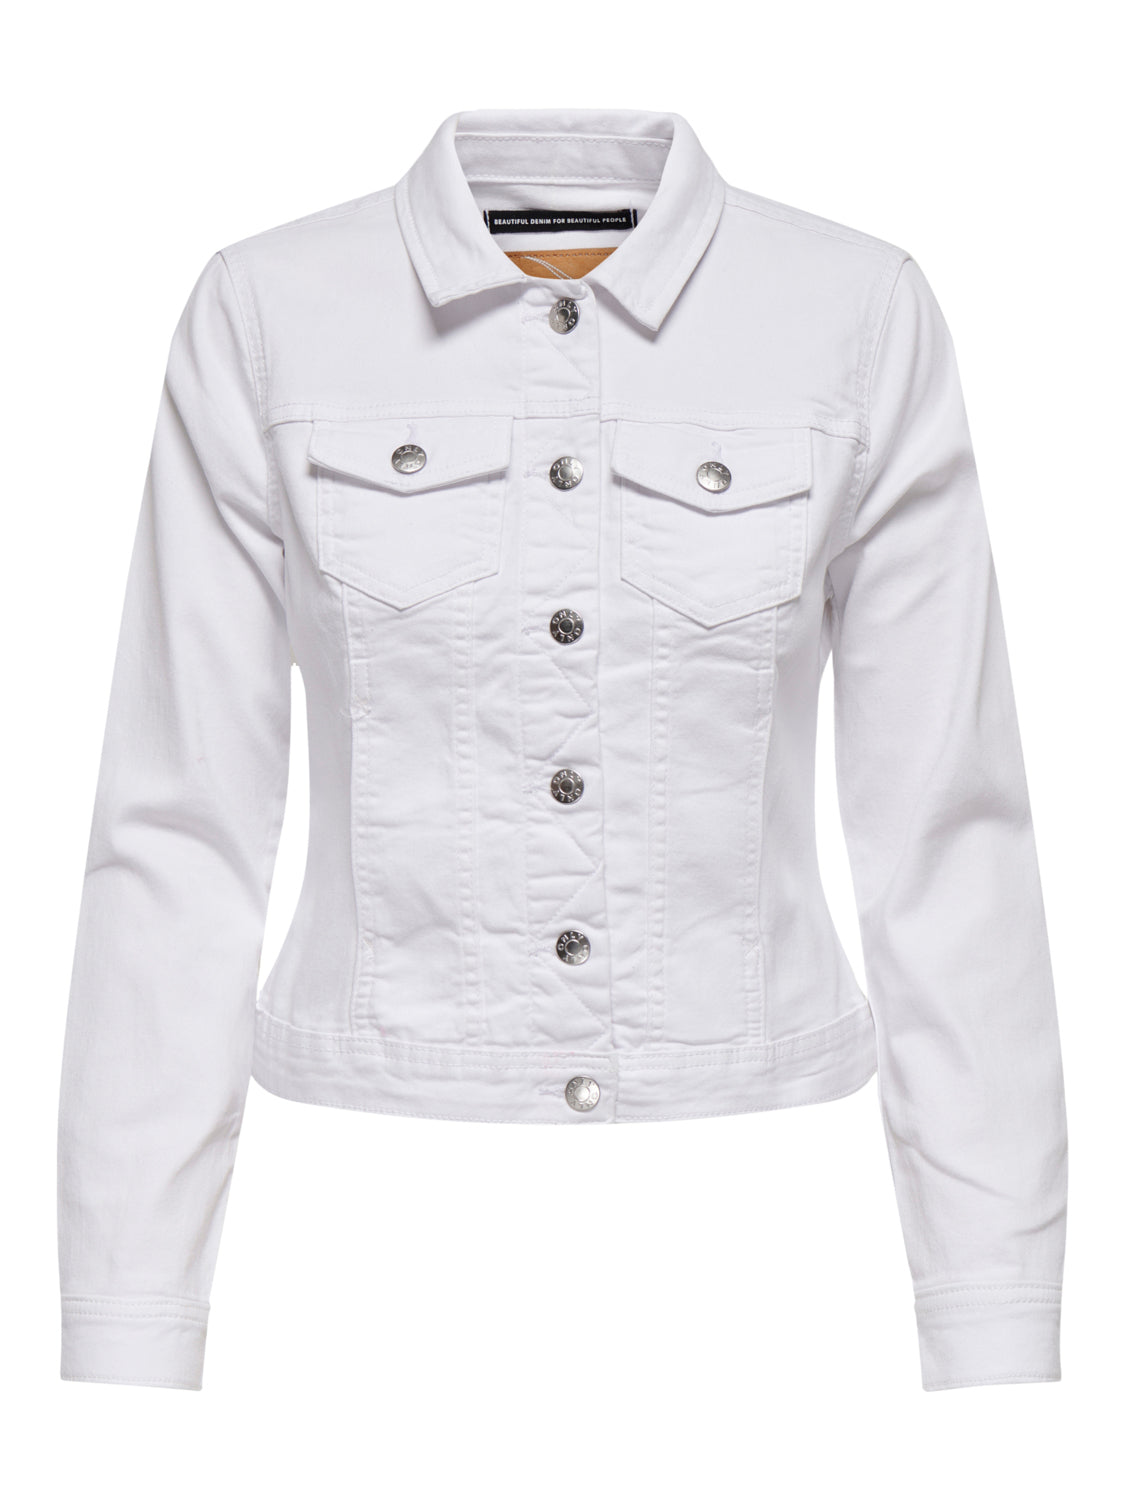 ONLWONDER Jacket - White